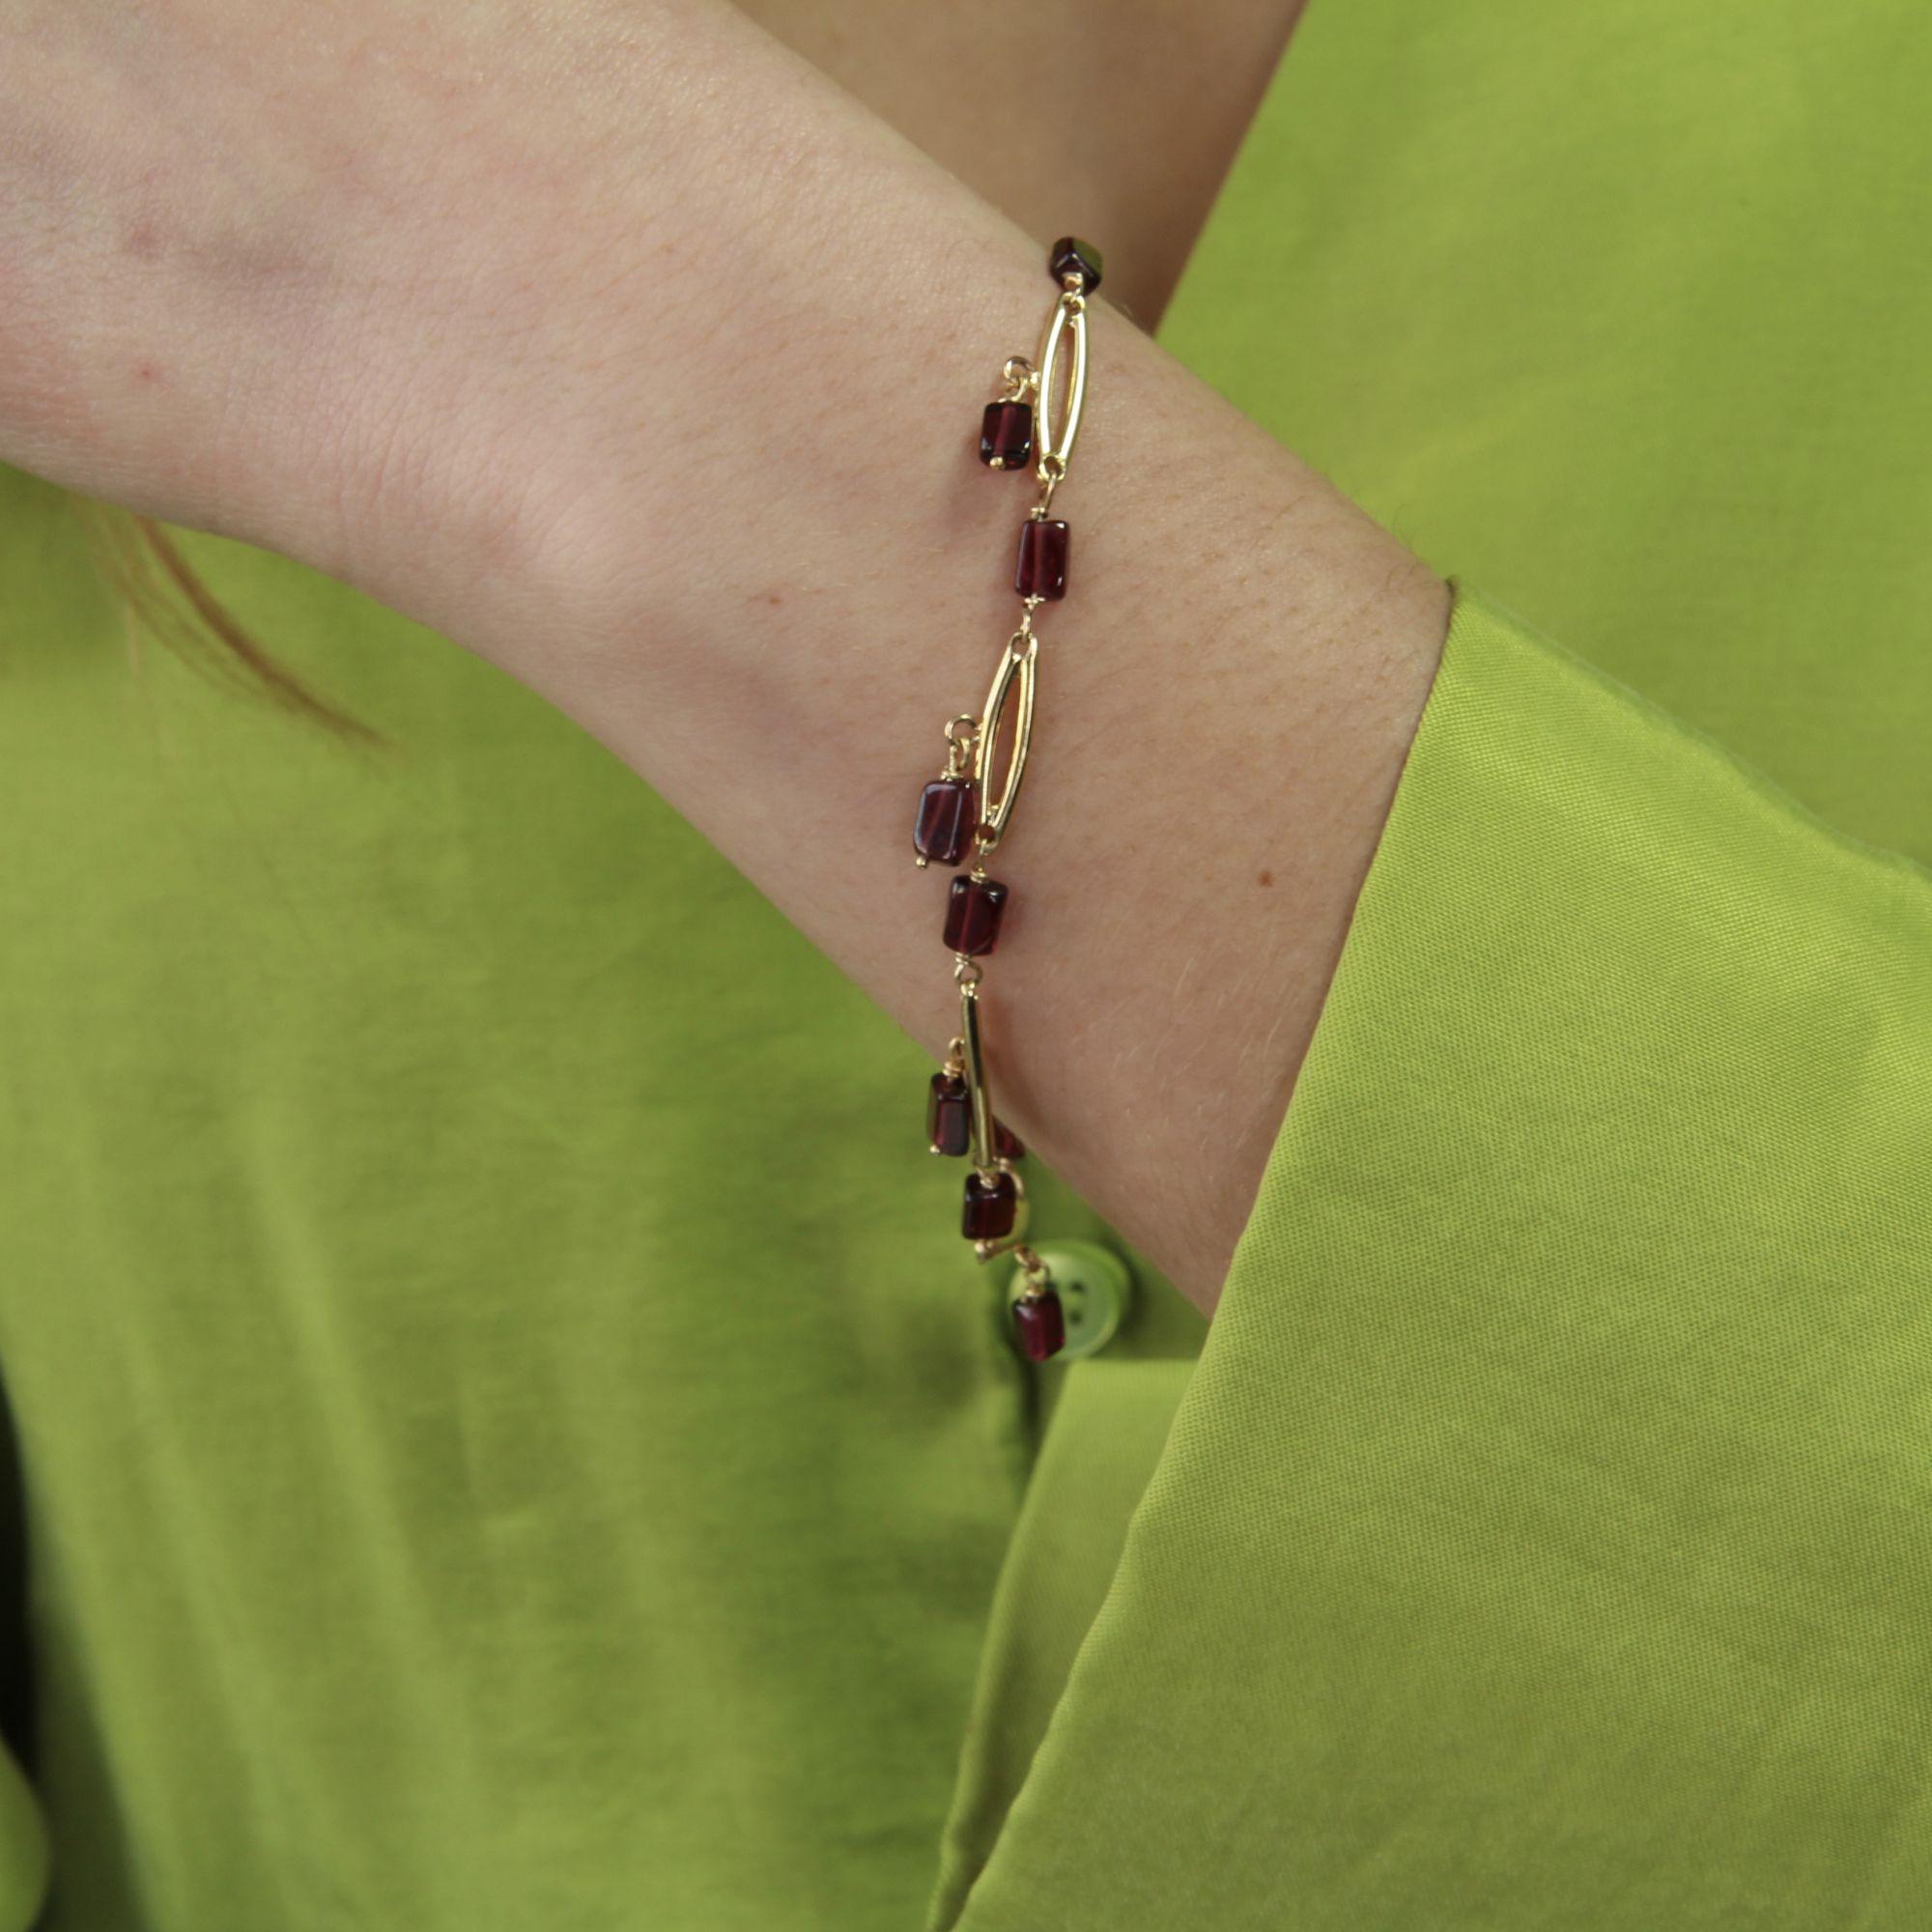 Armband aus 18 Karat Gelbgold, gemischte Punzierung.
Hübsches antikes Armband aus länglichen Goldgliedern, die durch einen Granat voneinander getrennt sind. Bei der Pendille hält jedes Glied einen weiteren Granat. Die Schließe ist ein